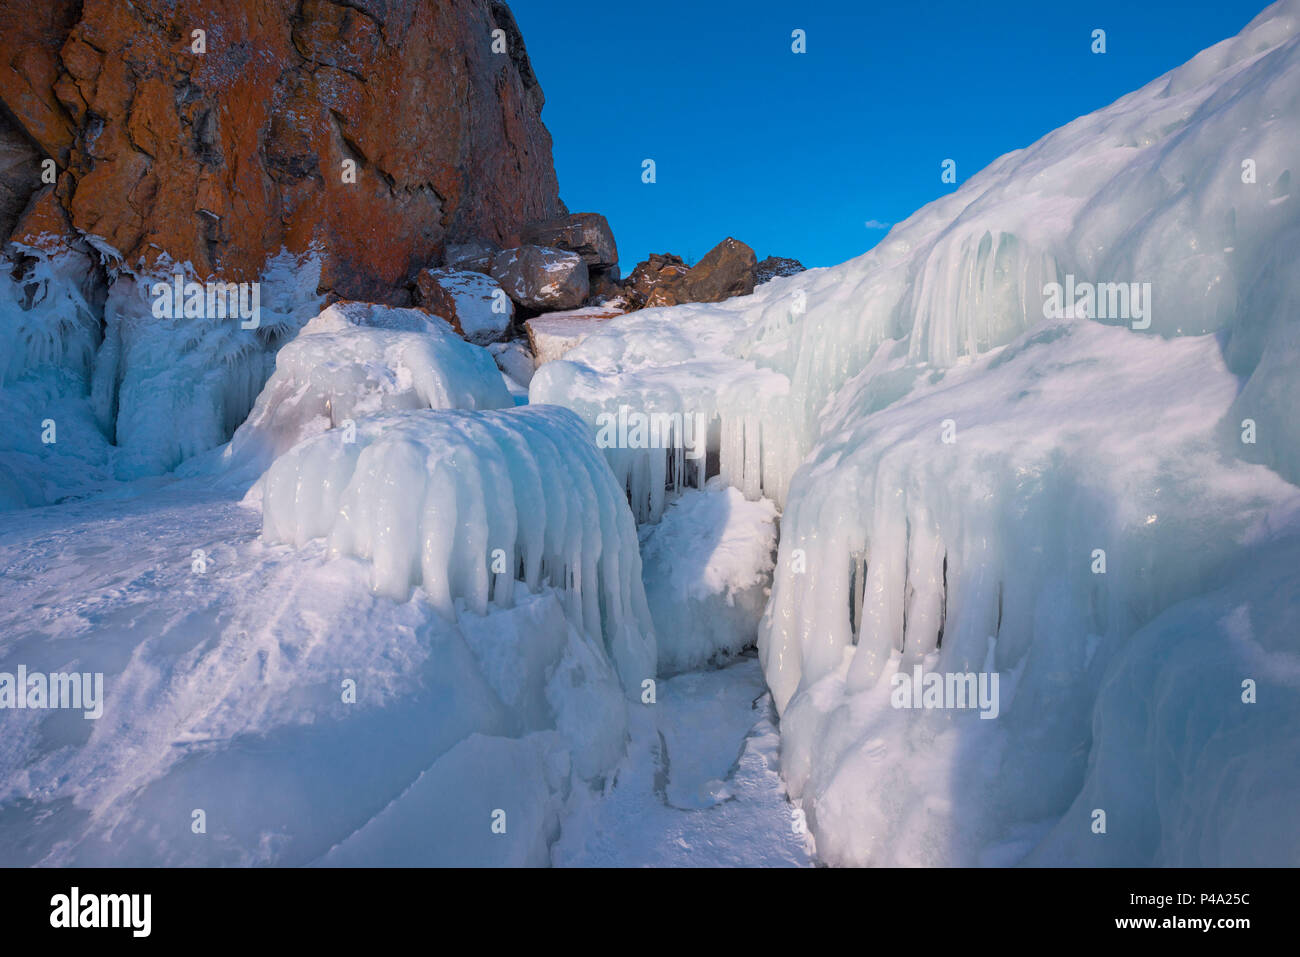 Stalattiti di ghiaccio sulla roccia, il lago Bajkal, Regione di Irkutsk, Siberia, Russia Foto Stock